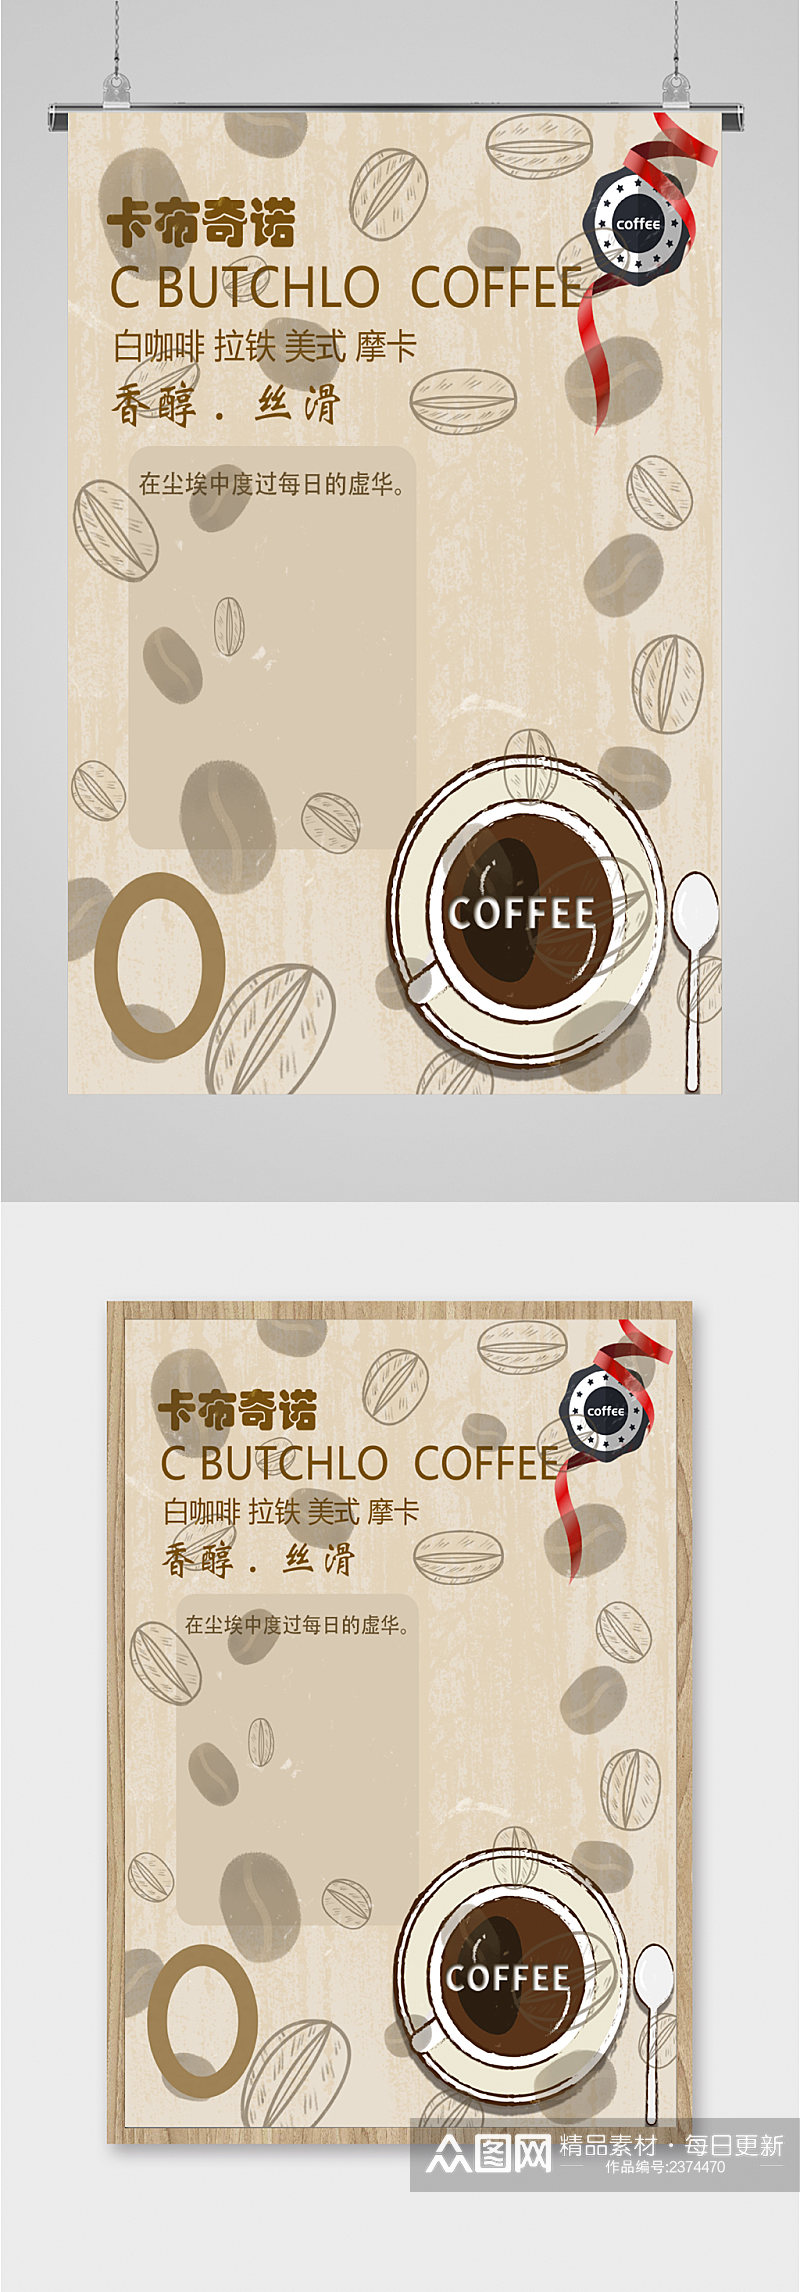 卡布奇诺咖啡海报素材